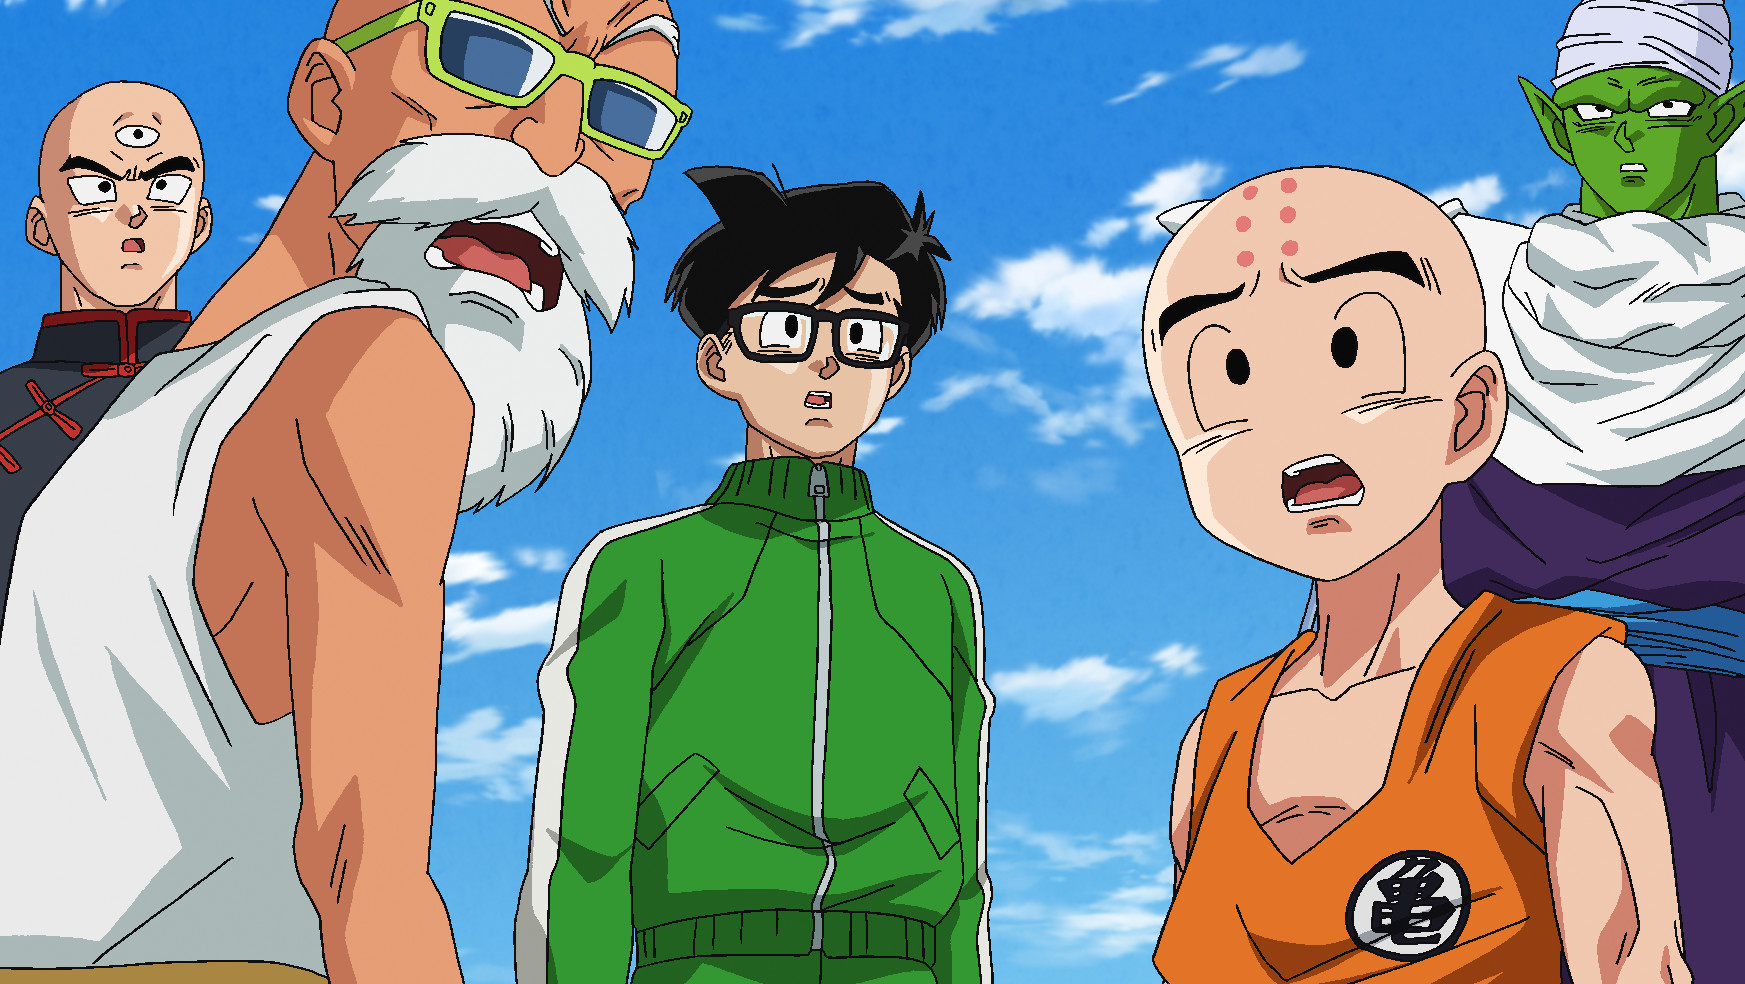 Watch Dragon Ball Super Season 1 Episode 21 Sub & Dub | Anime Simulcast | Funimation